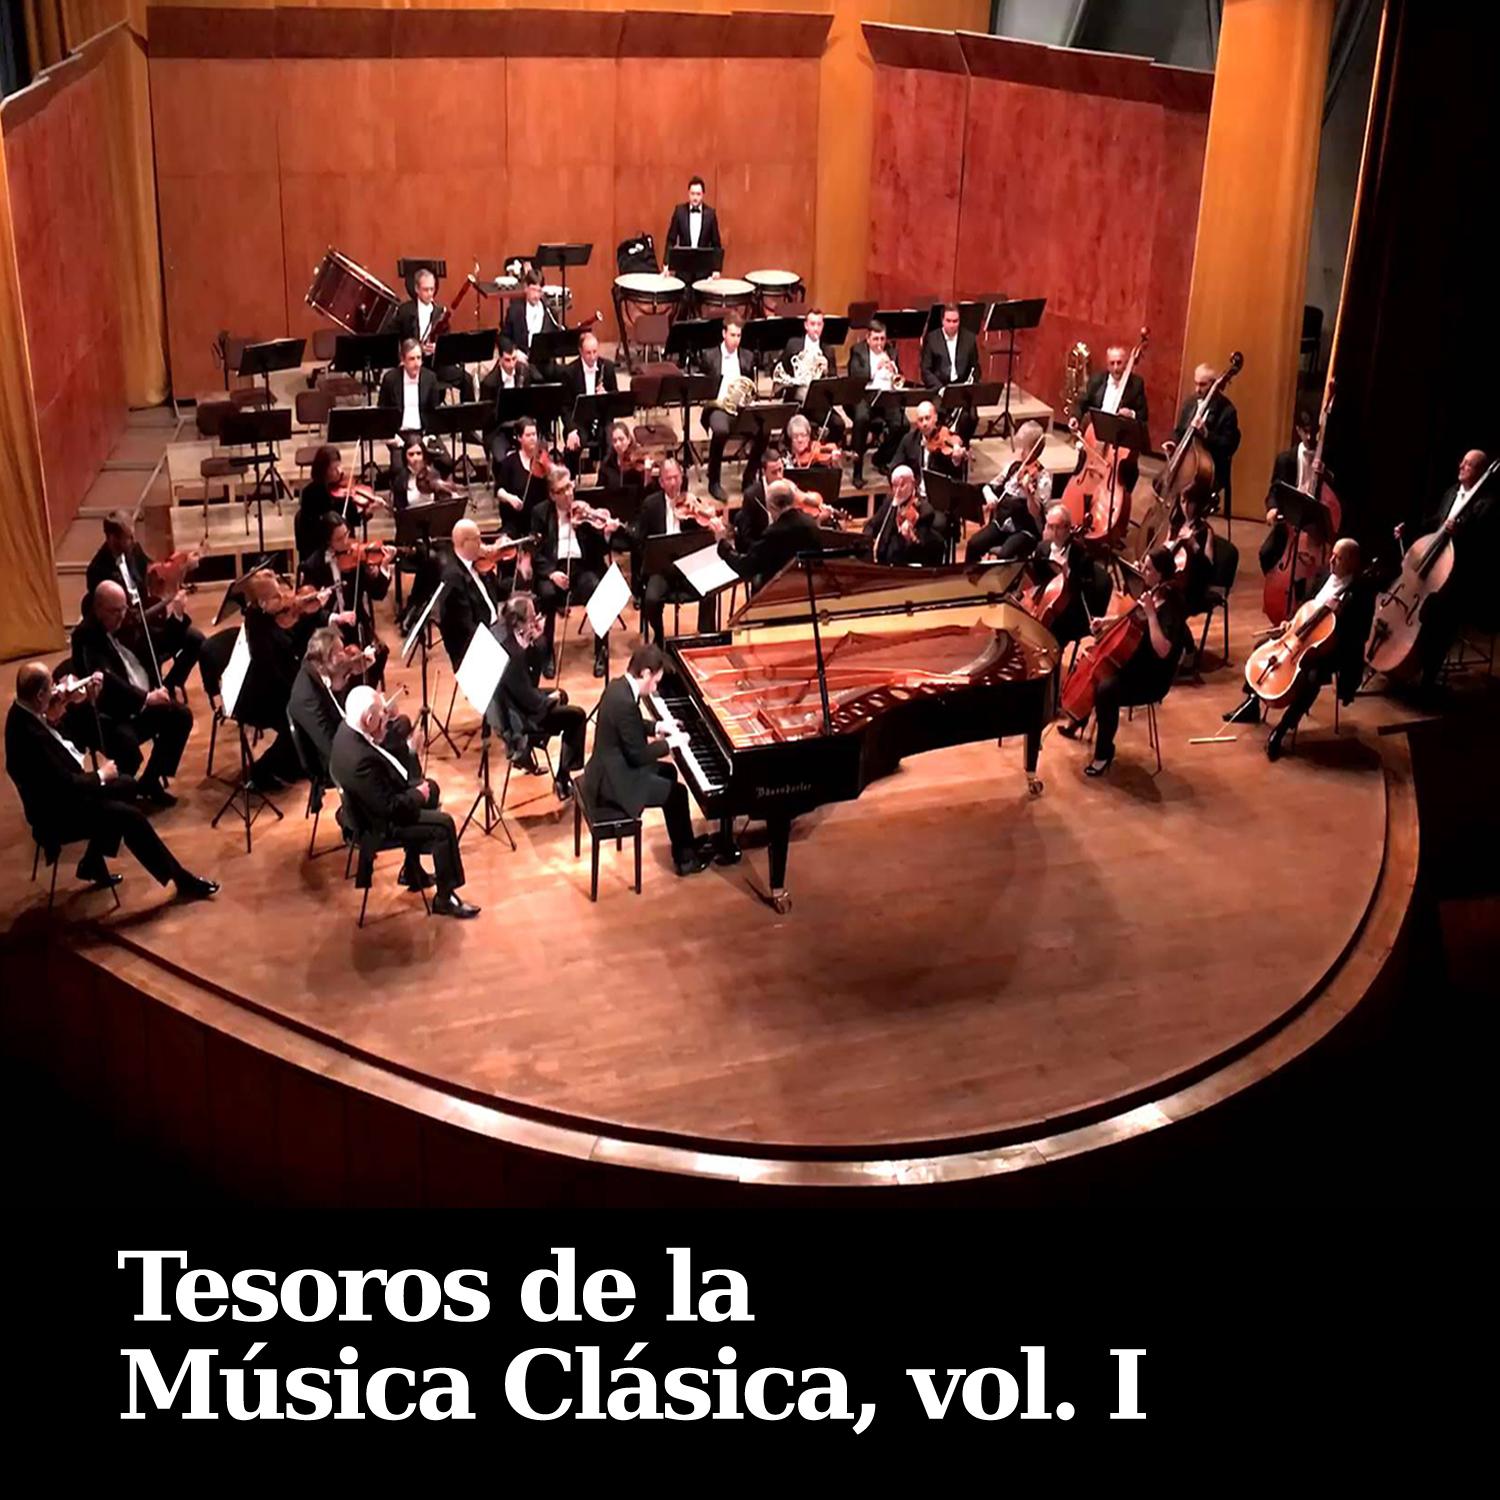 Tesoros de la Música Clásica, Vol. I